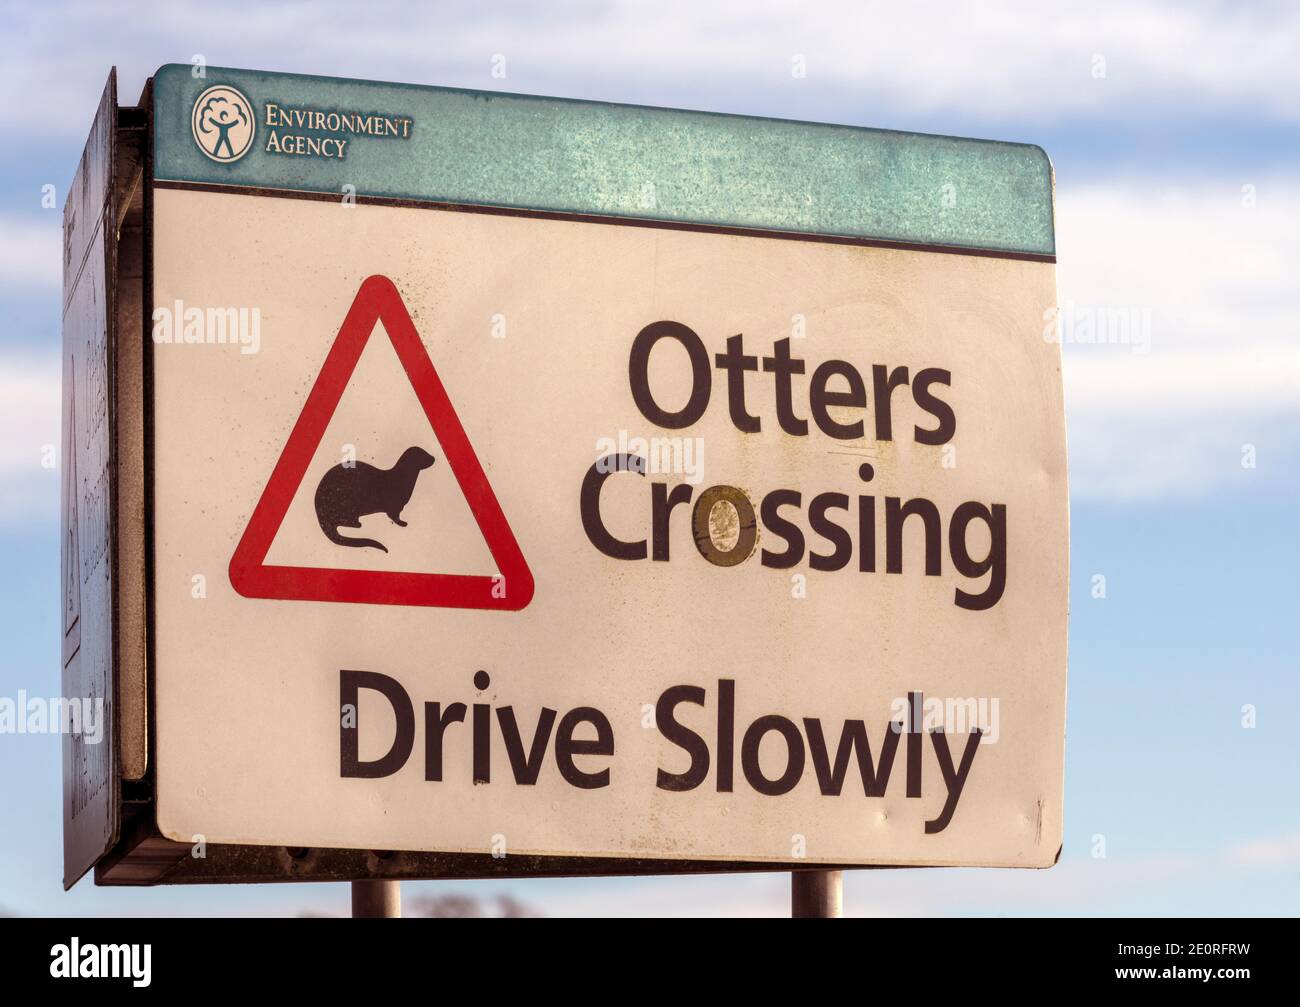 Señal inusual en Lymington, Hampshire, Inglaterra, Reino Unido - Otters Crossing Drive lentamente Foto de stock